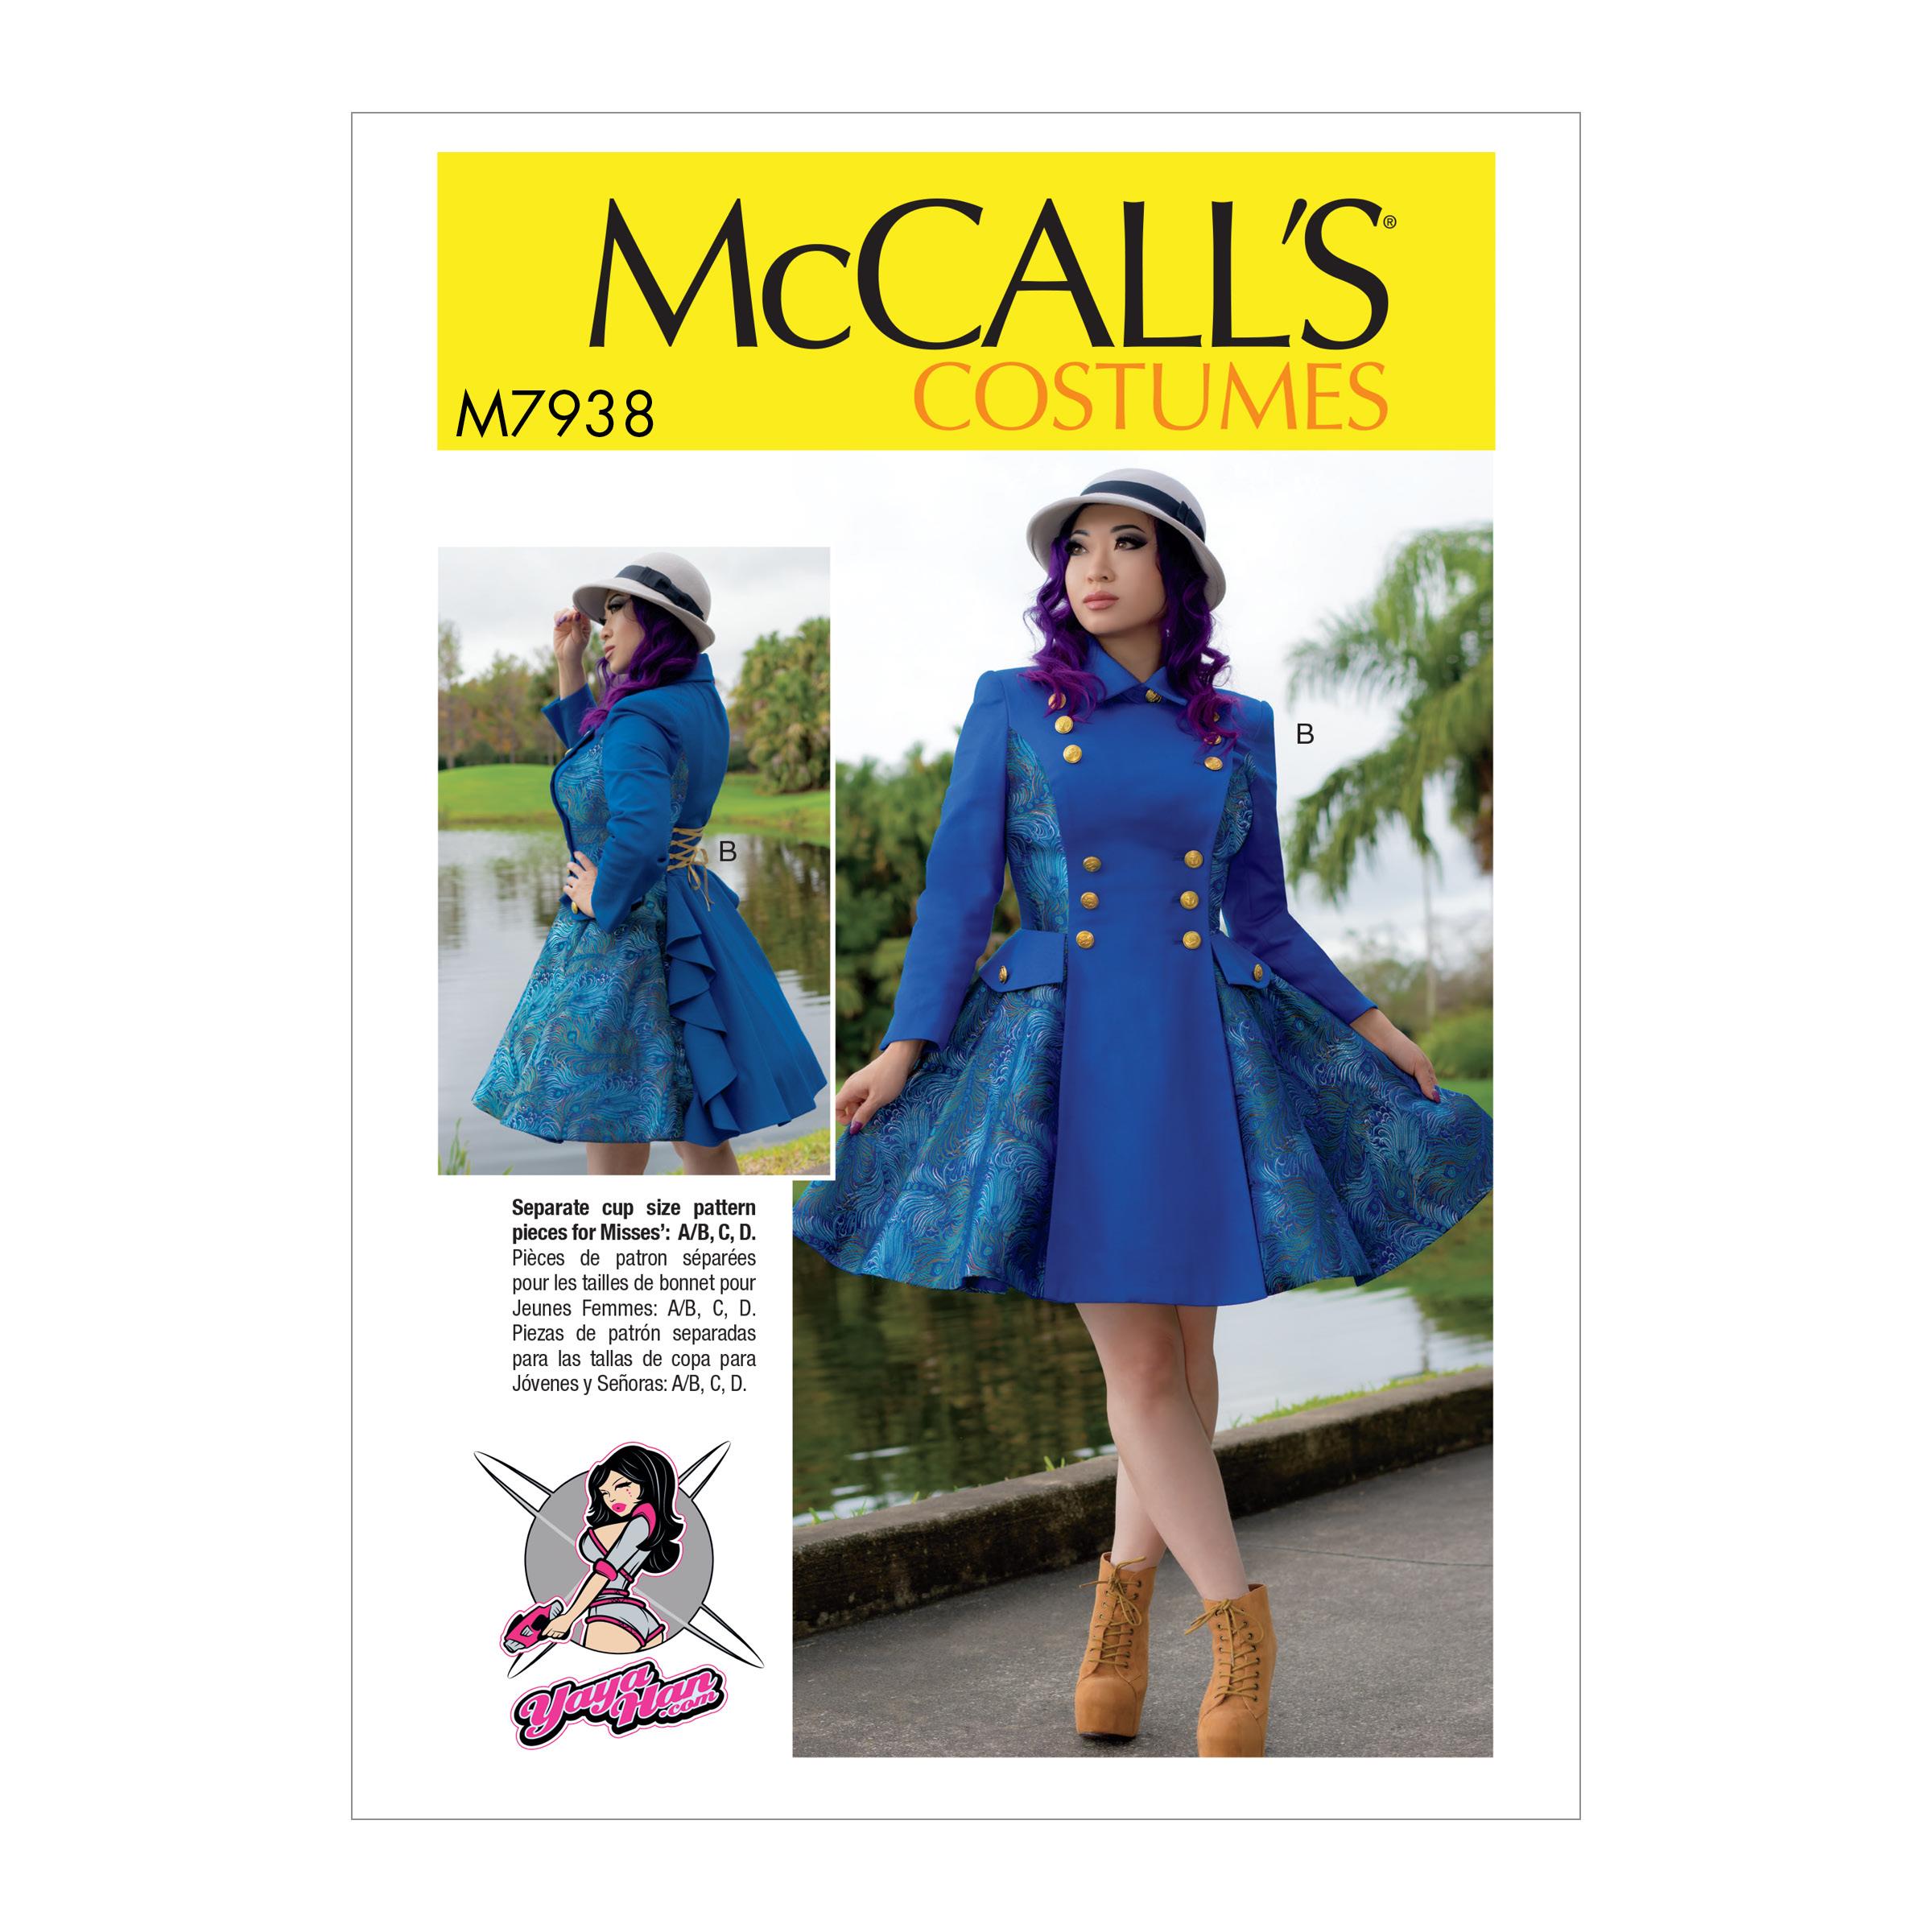 McCalls M7938 Costumes